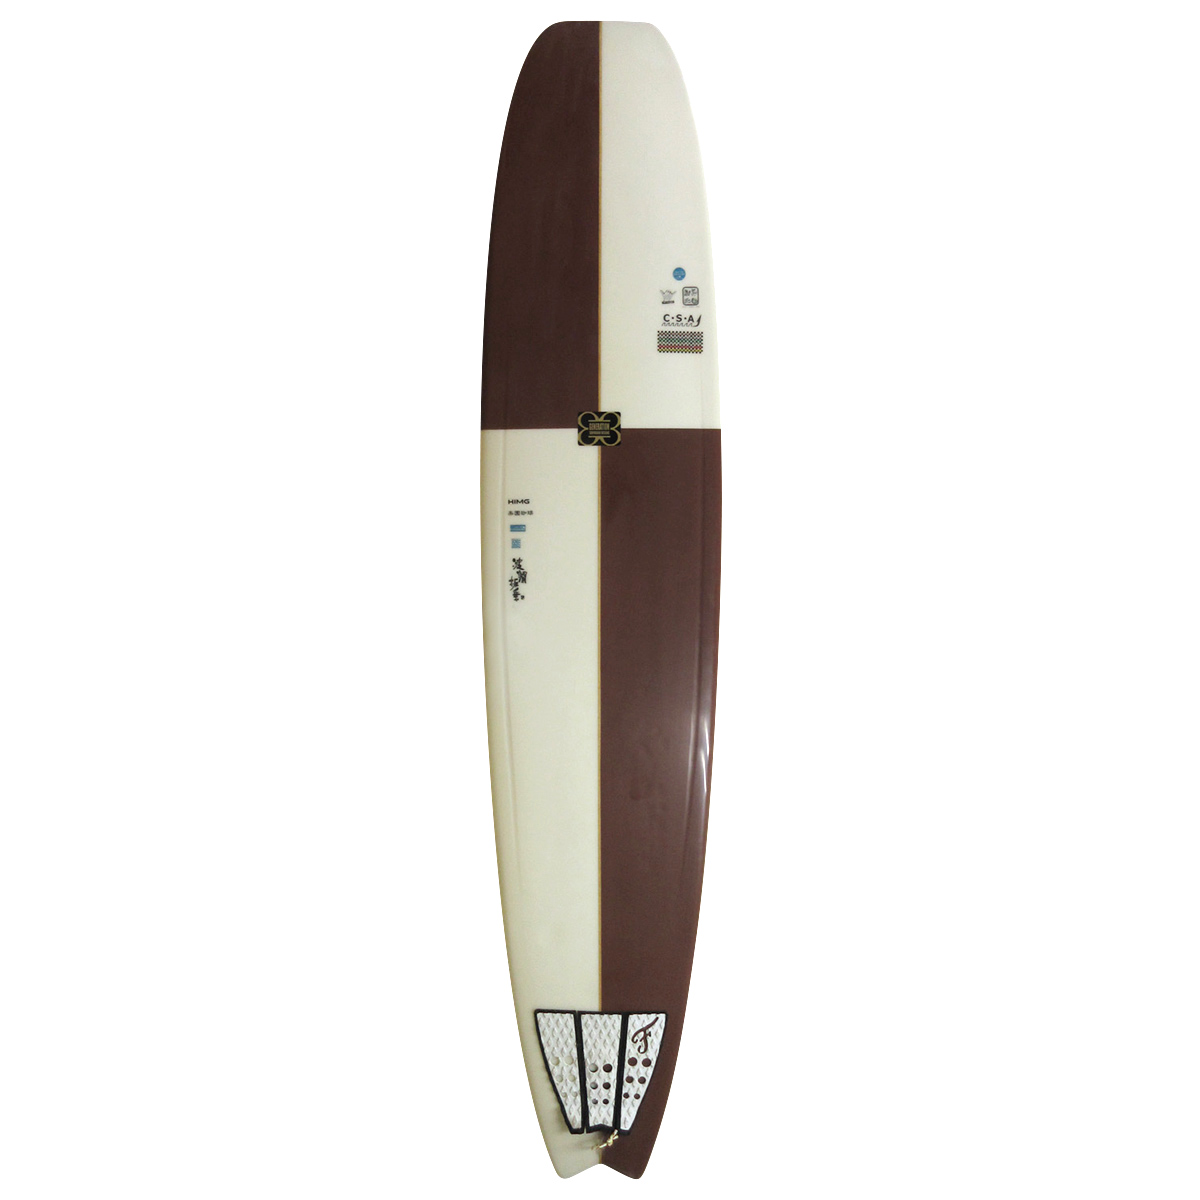 GENERATION SURFBOARDS / Custom Noserider